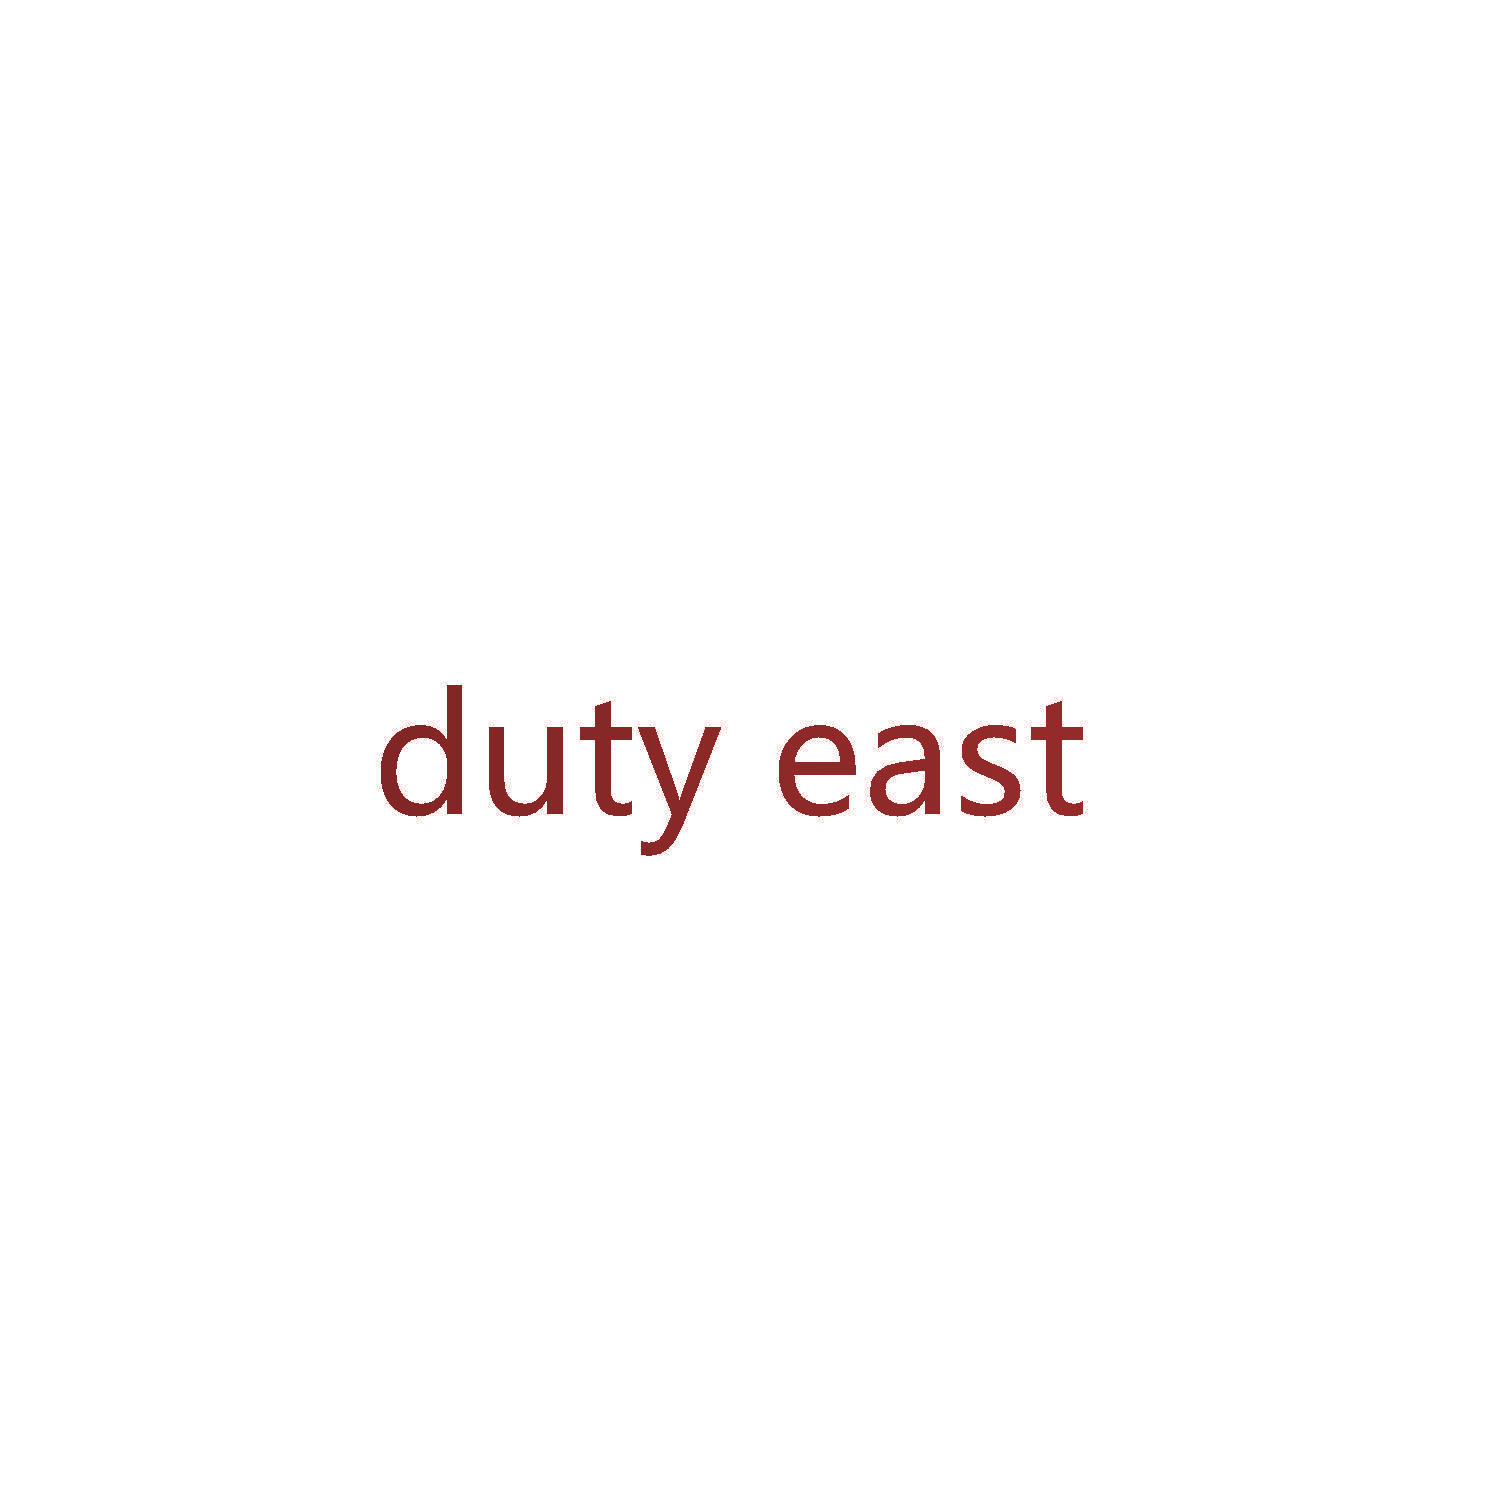 duty east